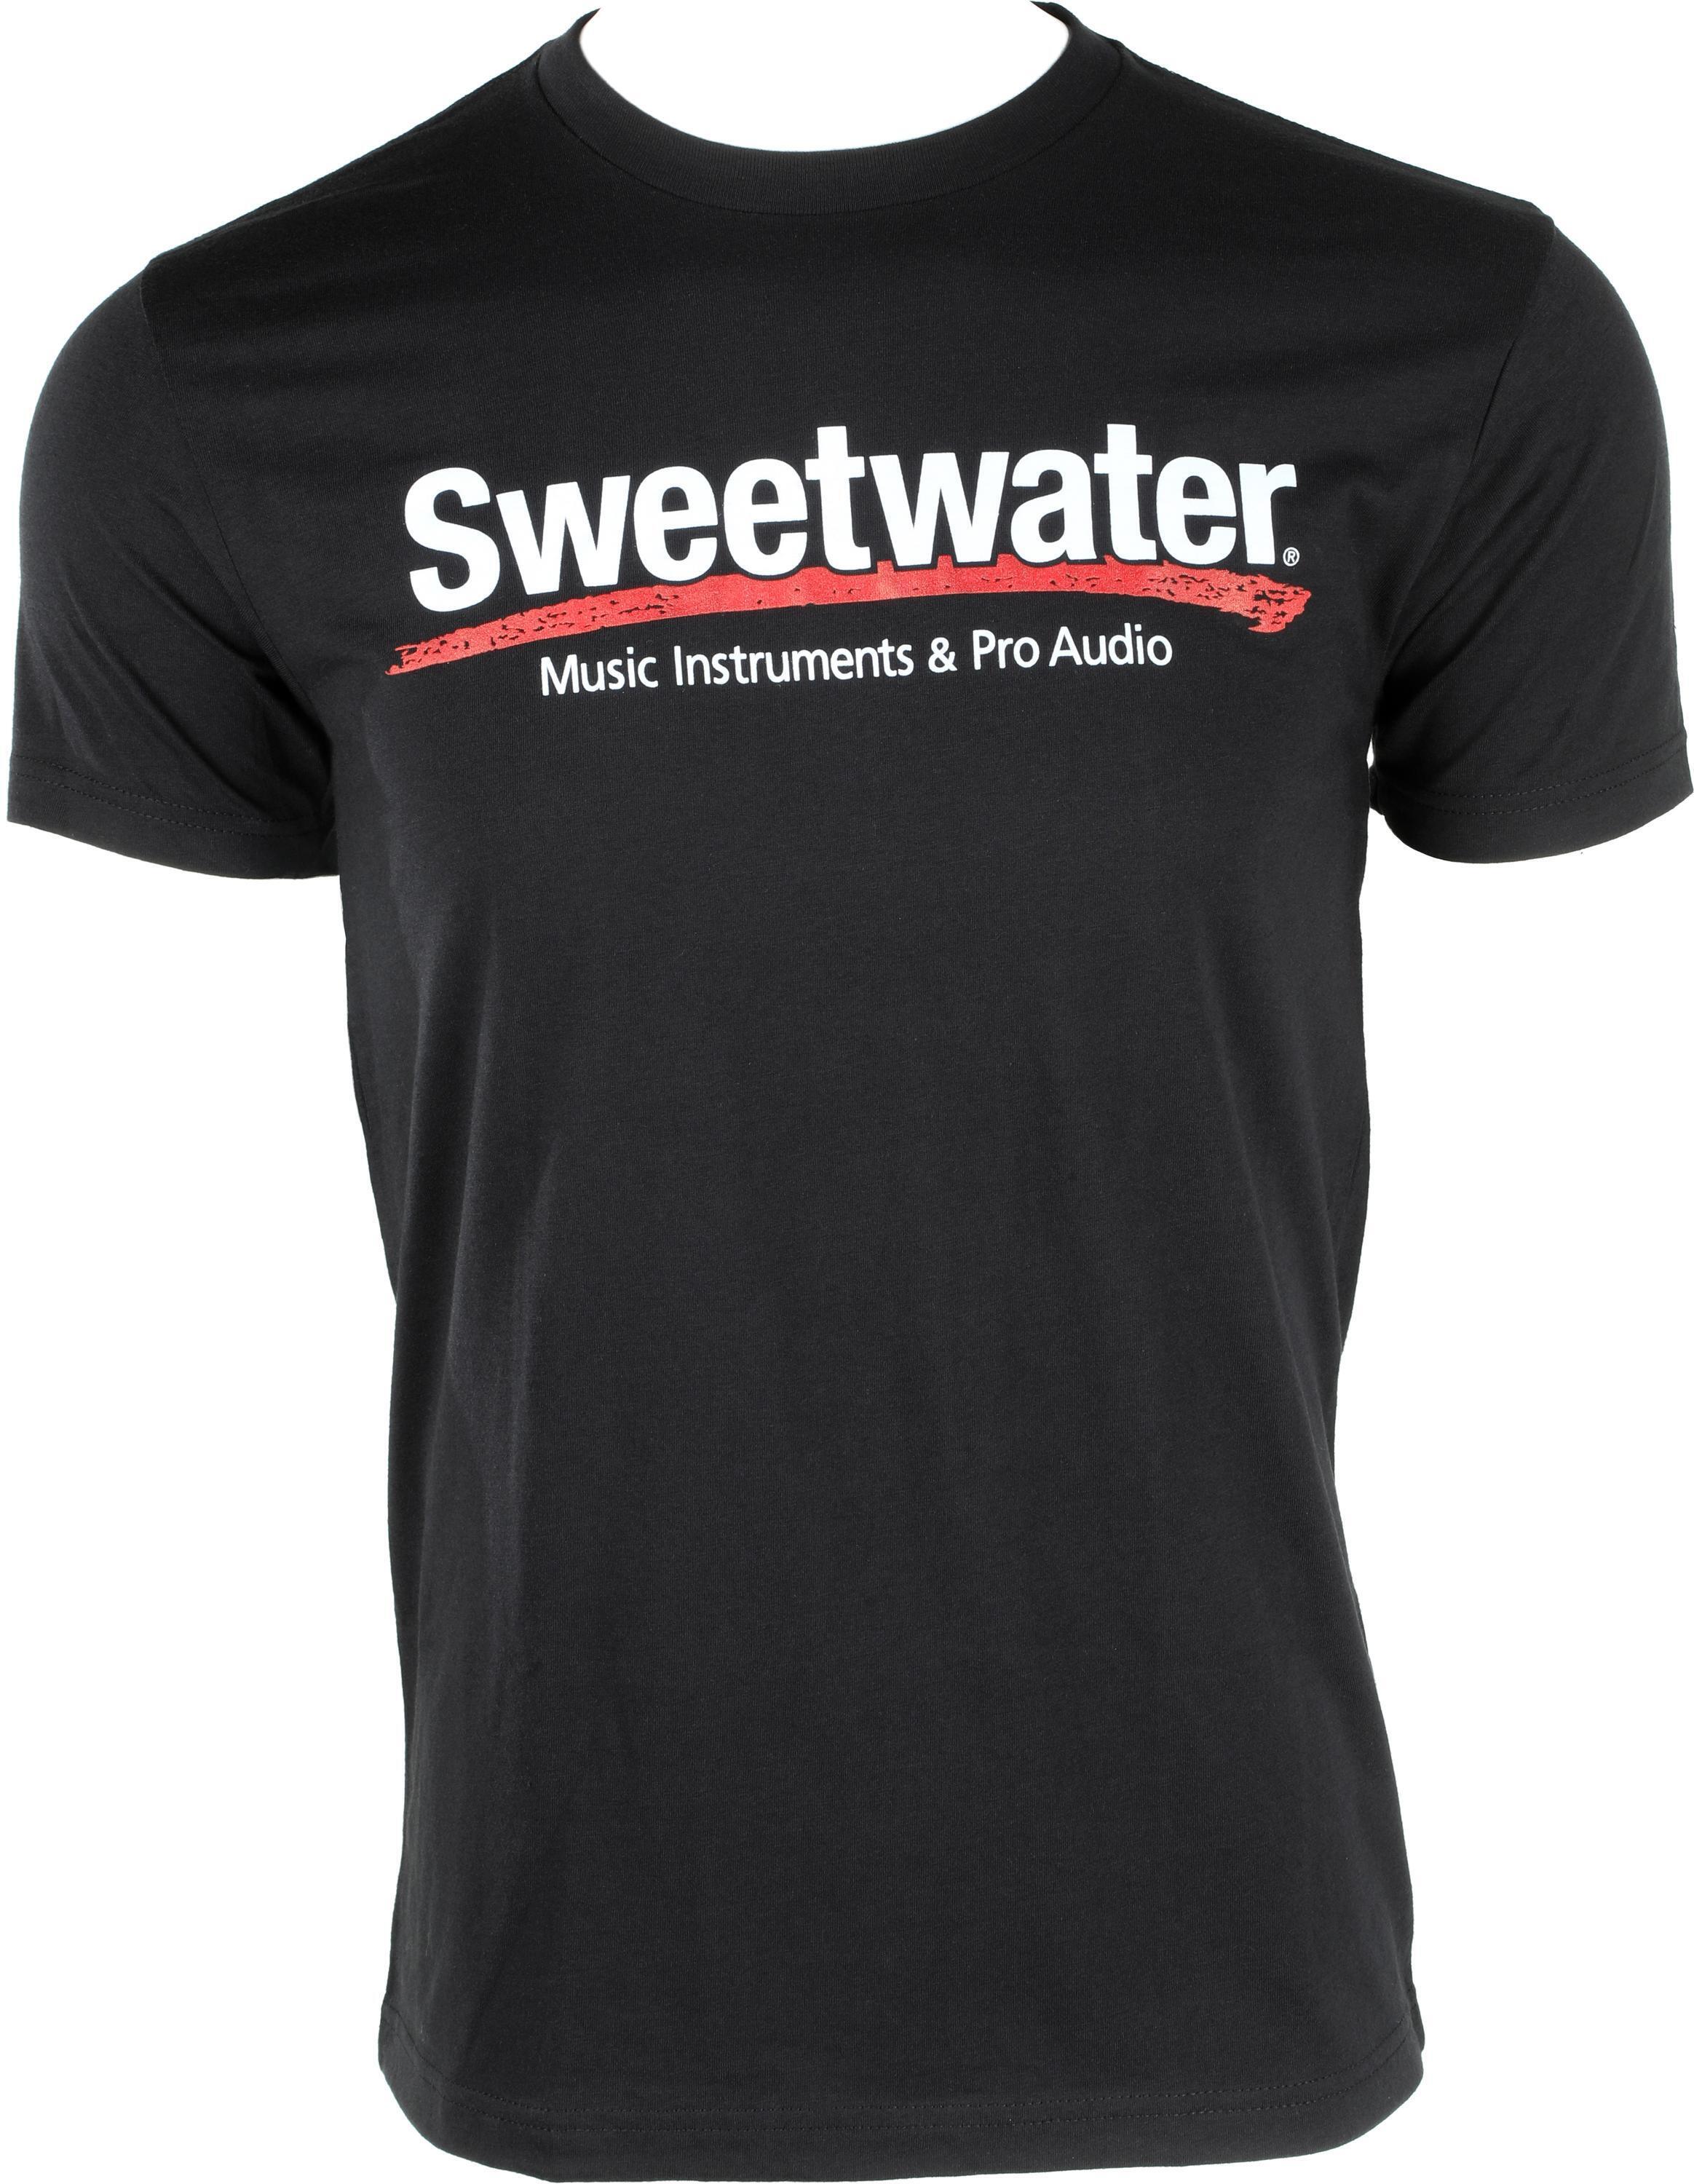 Sweetwater Logo T-shirt - Black, Large